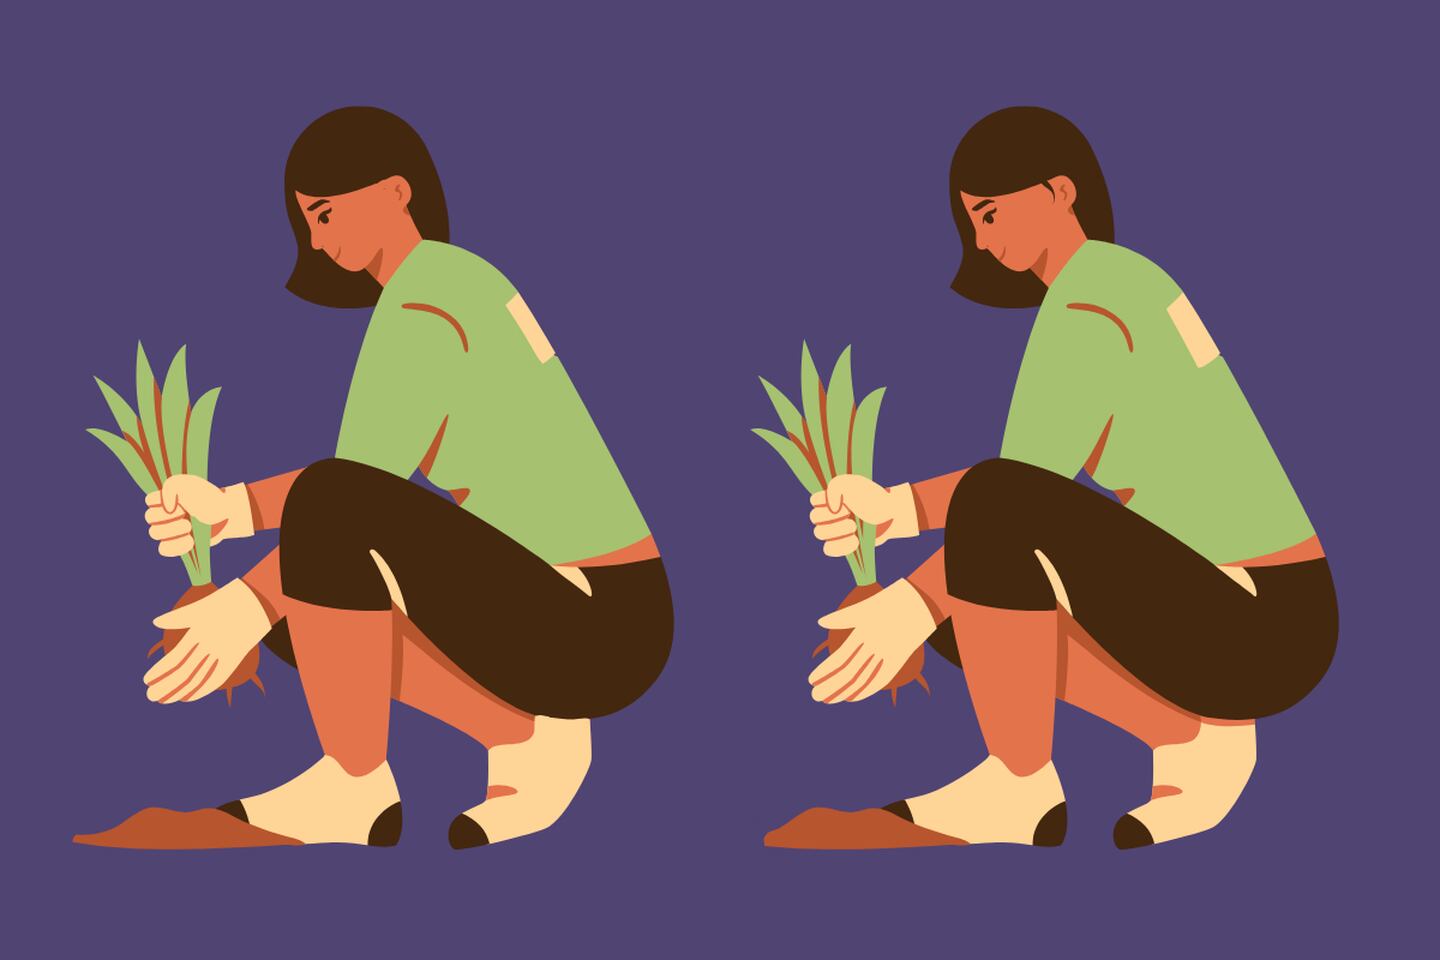 En este test visual podemos ver la imagen de dos mujeres plantando, y aunque parecen iguales, hay 5 diferencias entre ellas.